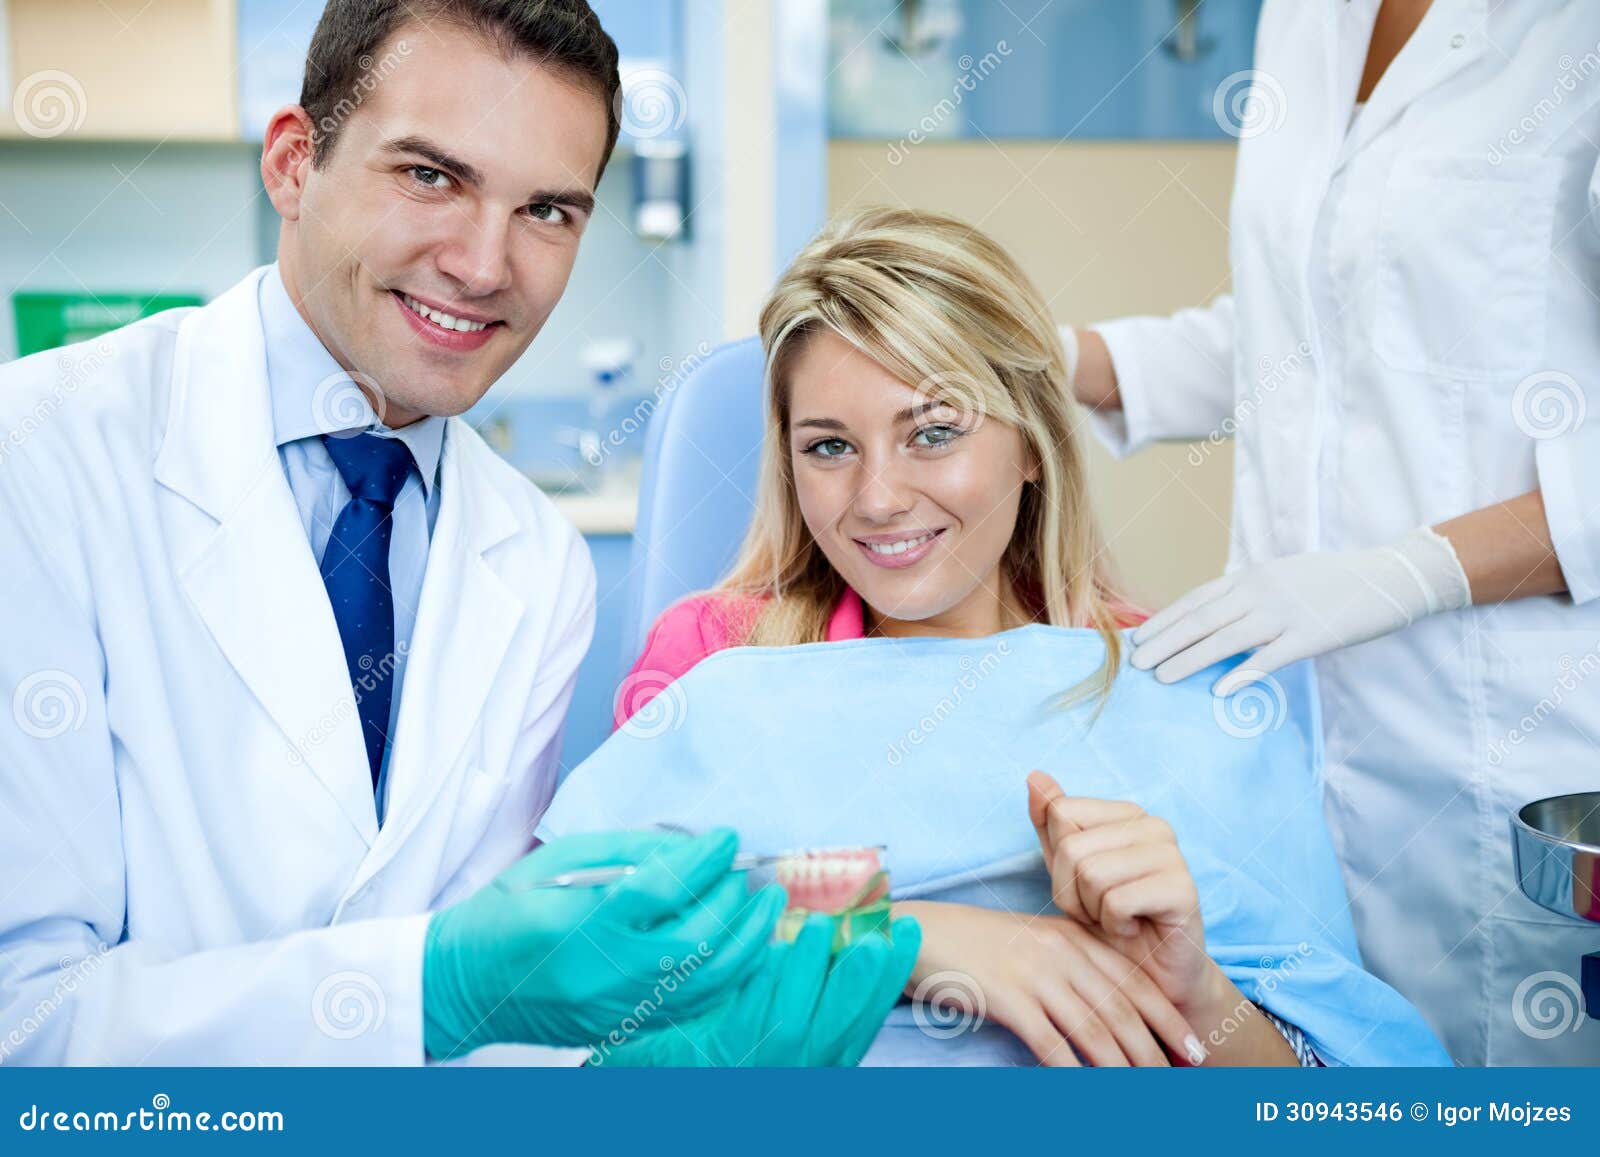 dentist explaining a female patient denture work